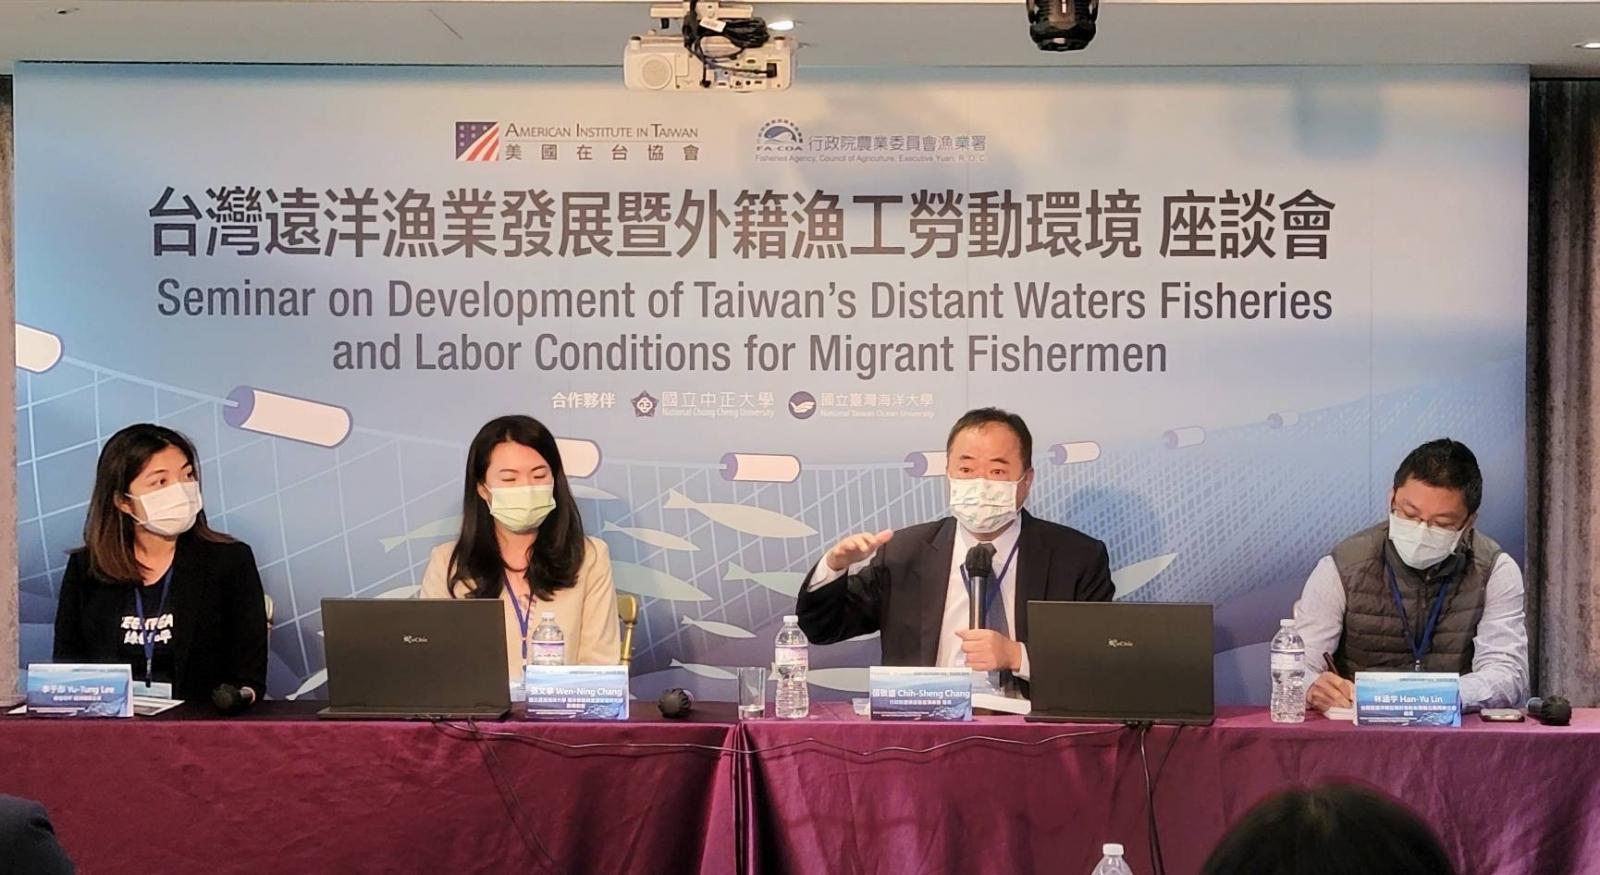 110年11月10日漁業署與美國在臺協會共同舉辦台灣遠洋漁業發展暨外籍漁工勞動環境座談會